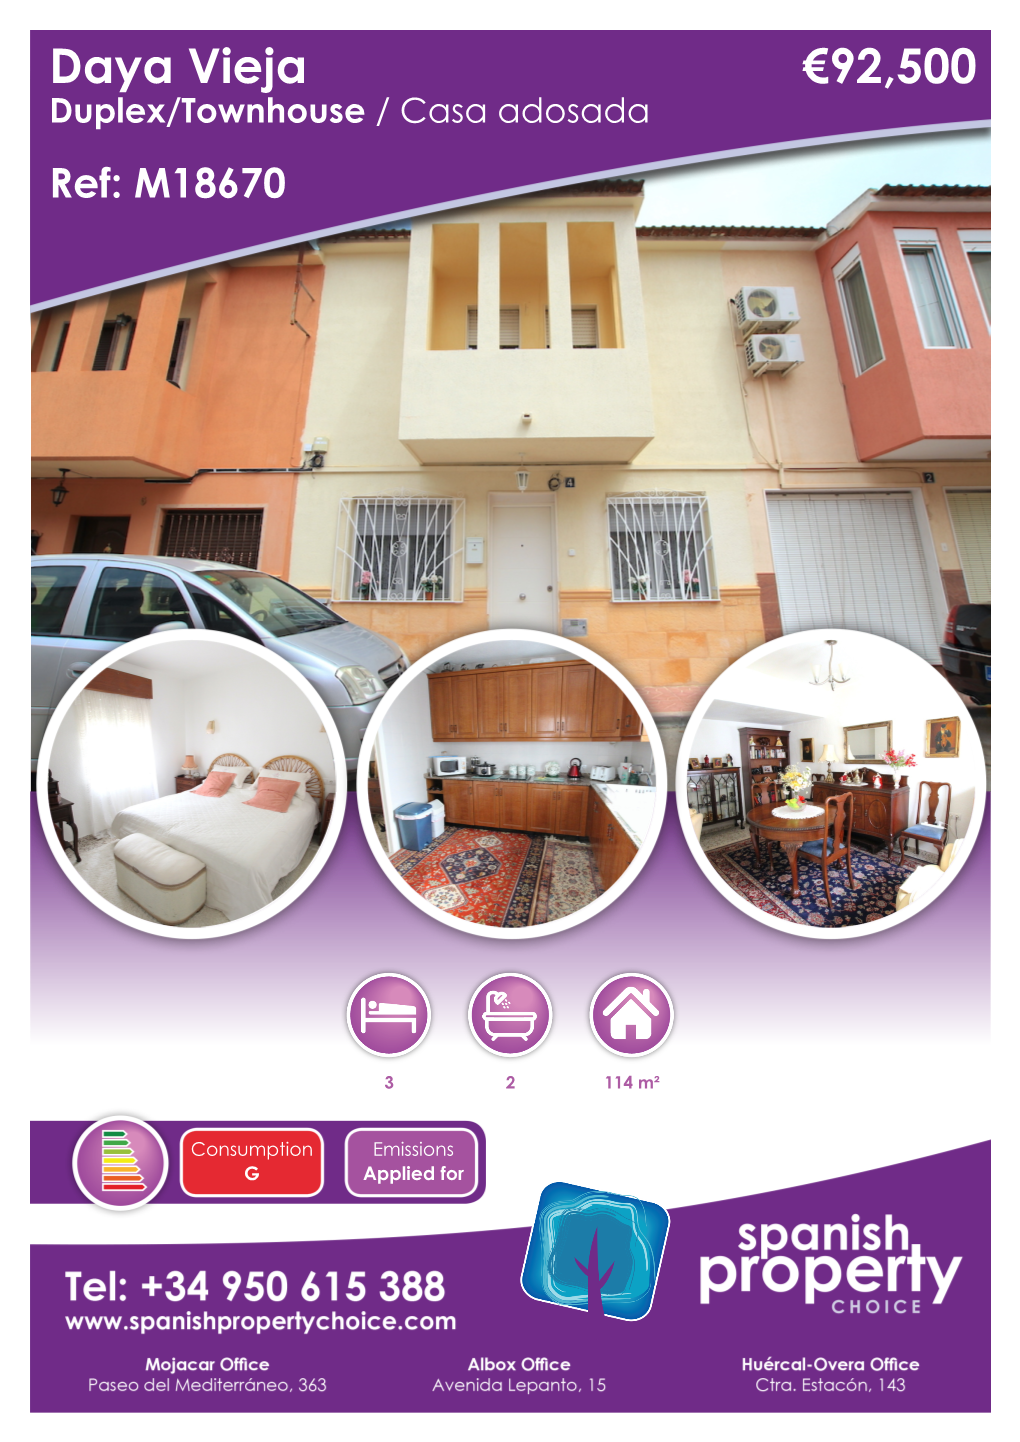 Daya Vieja €92,500 Duplex/Townhouse / Casa Adosada Ref: M18670